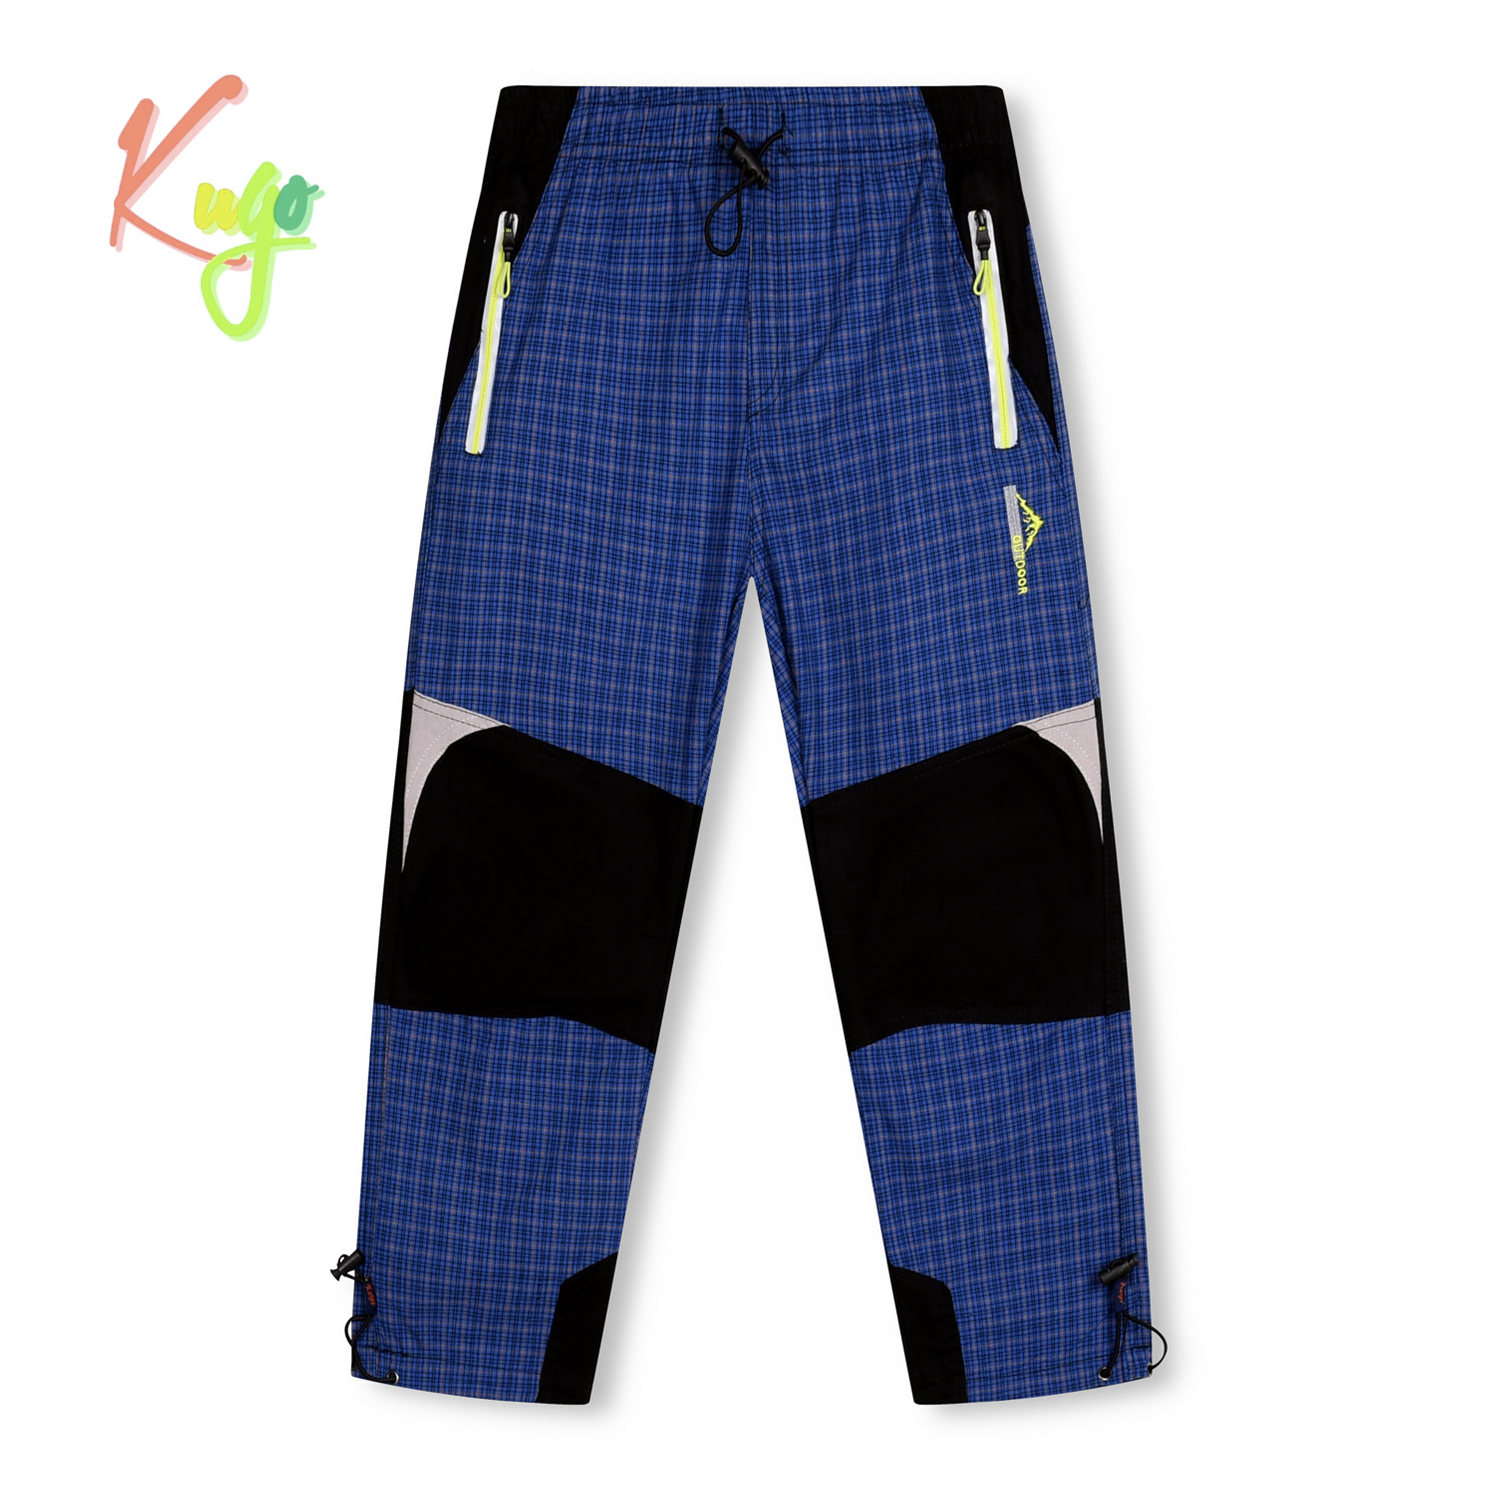 Chlapecké plátěné kalhoty - KUGO FK7605, modrá Barva: Modrá, Velikost: 146